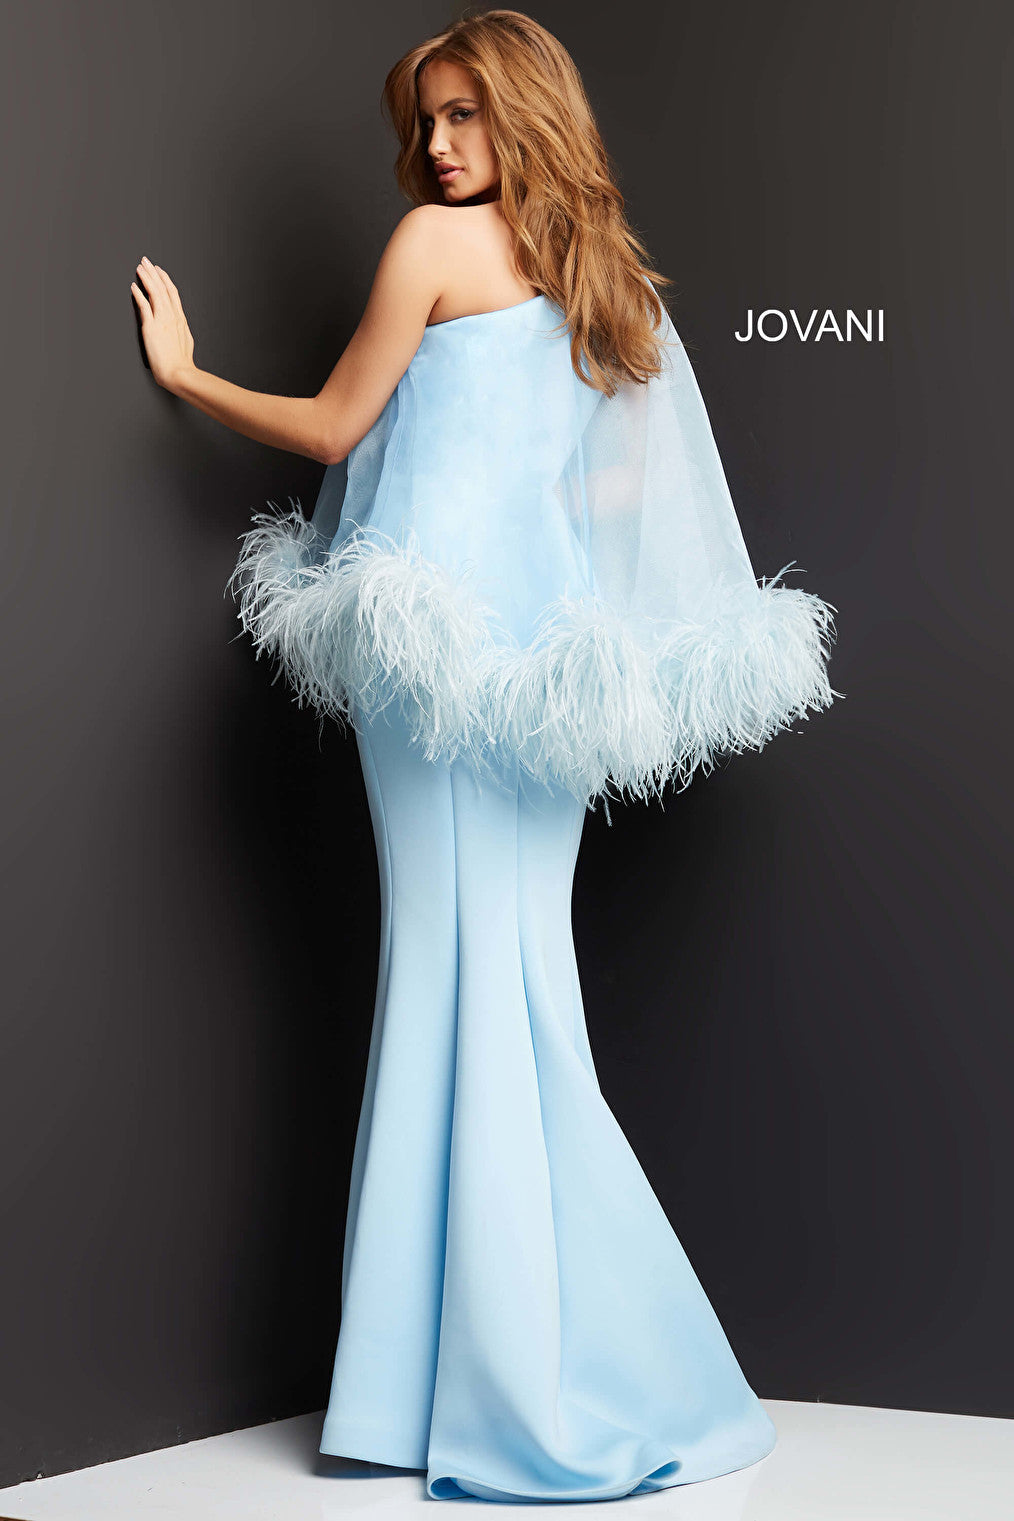 Jovani 07361 Light Blue One Shoulder Overlay Evening Gown